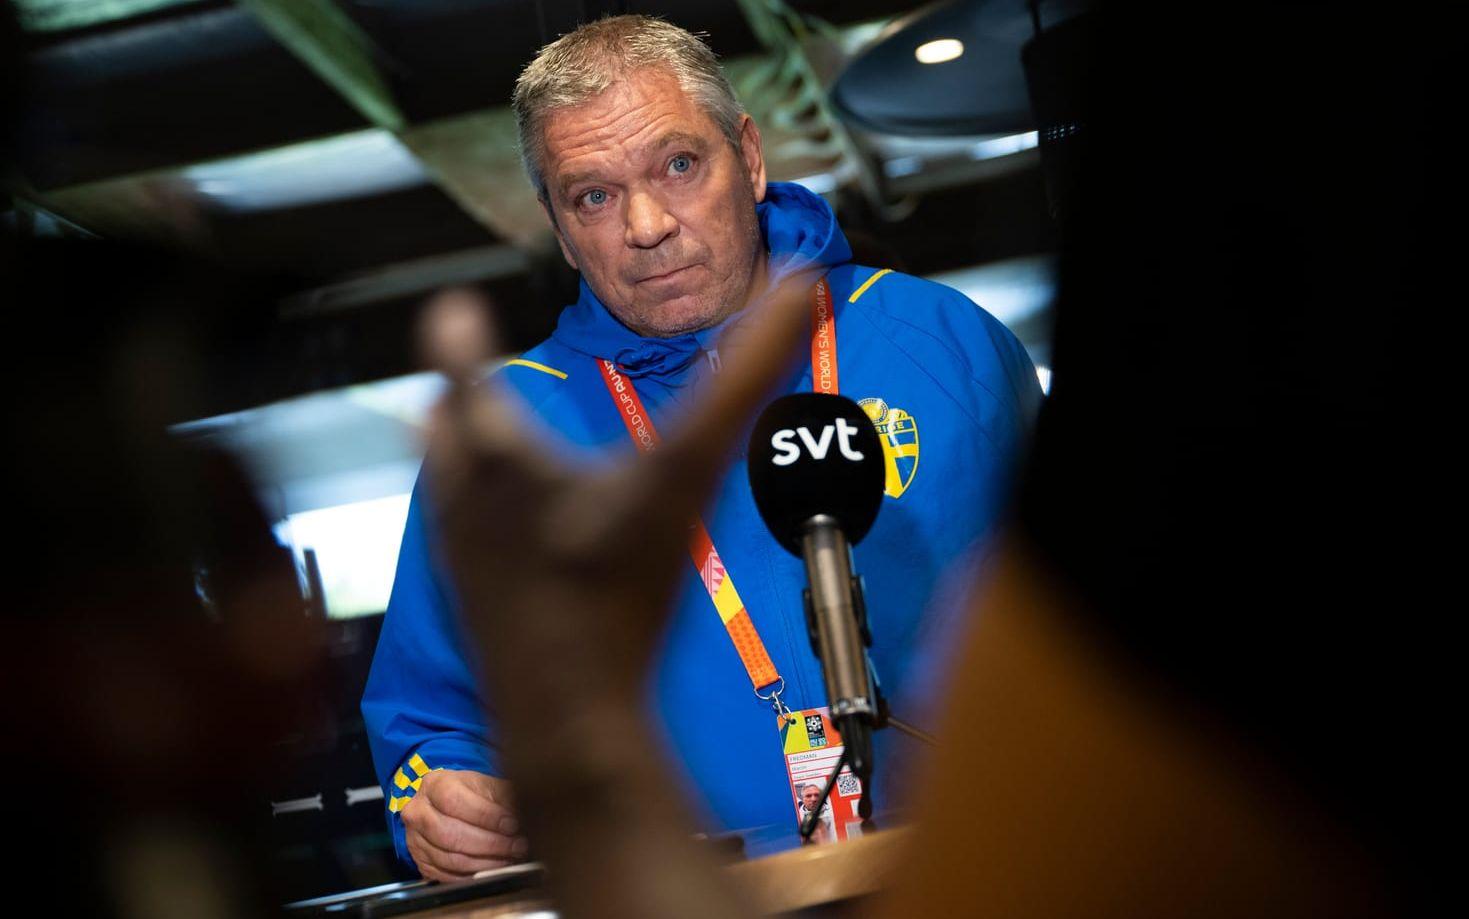 Svenska fotbollförbundets säkerhetschef Martin Fredman.